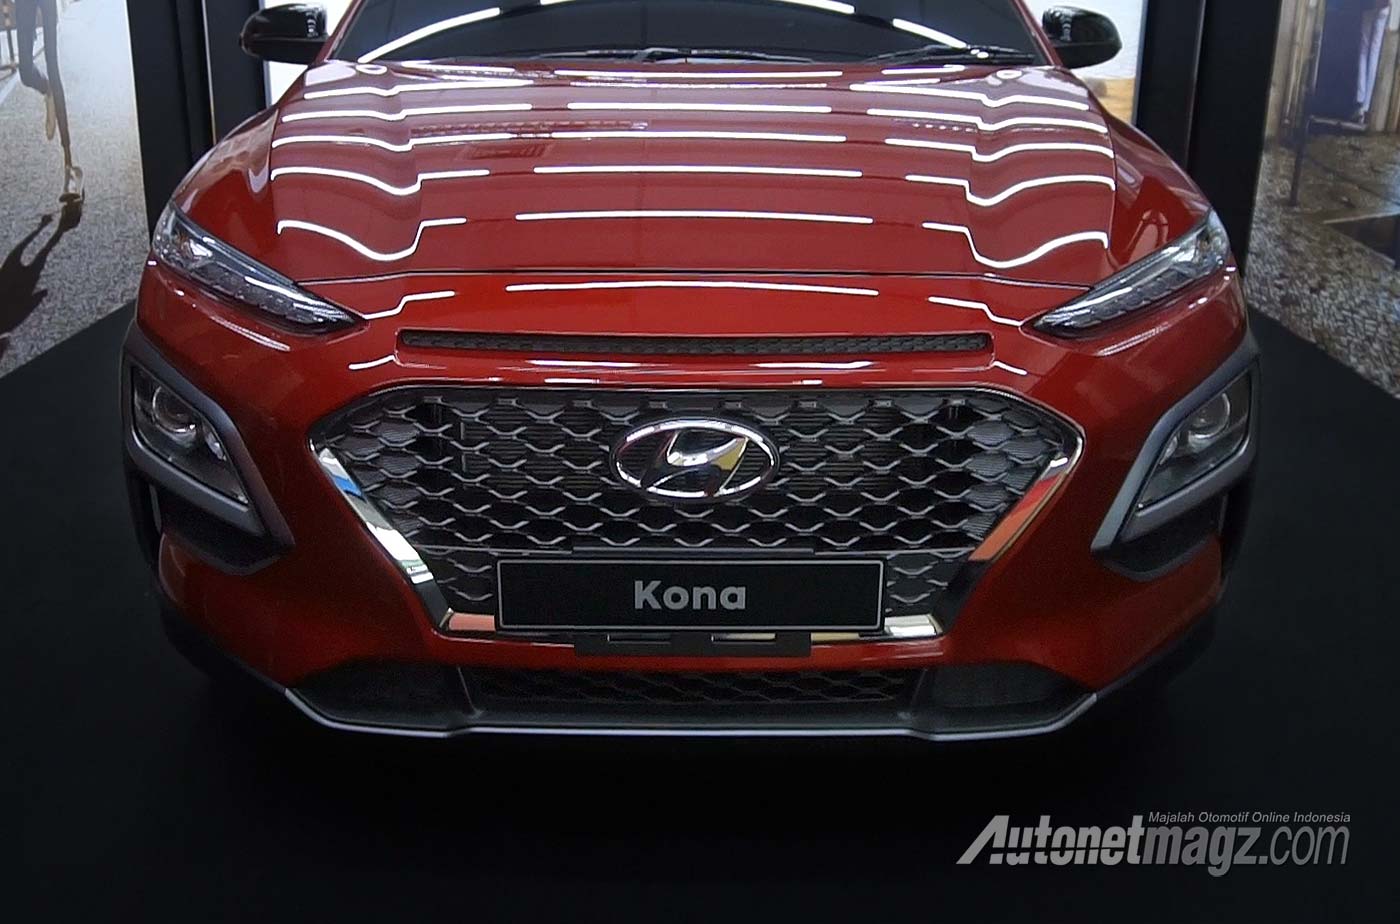 Berita, Fitur-Hyundai-Kona-Indonesia: Preview Hyundai Kona : Penantang Baru Di Segmen Crossover!